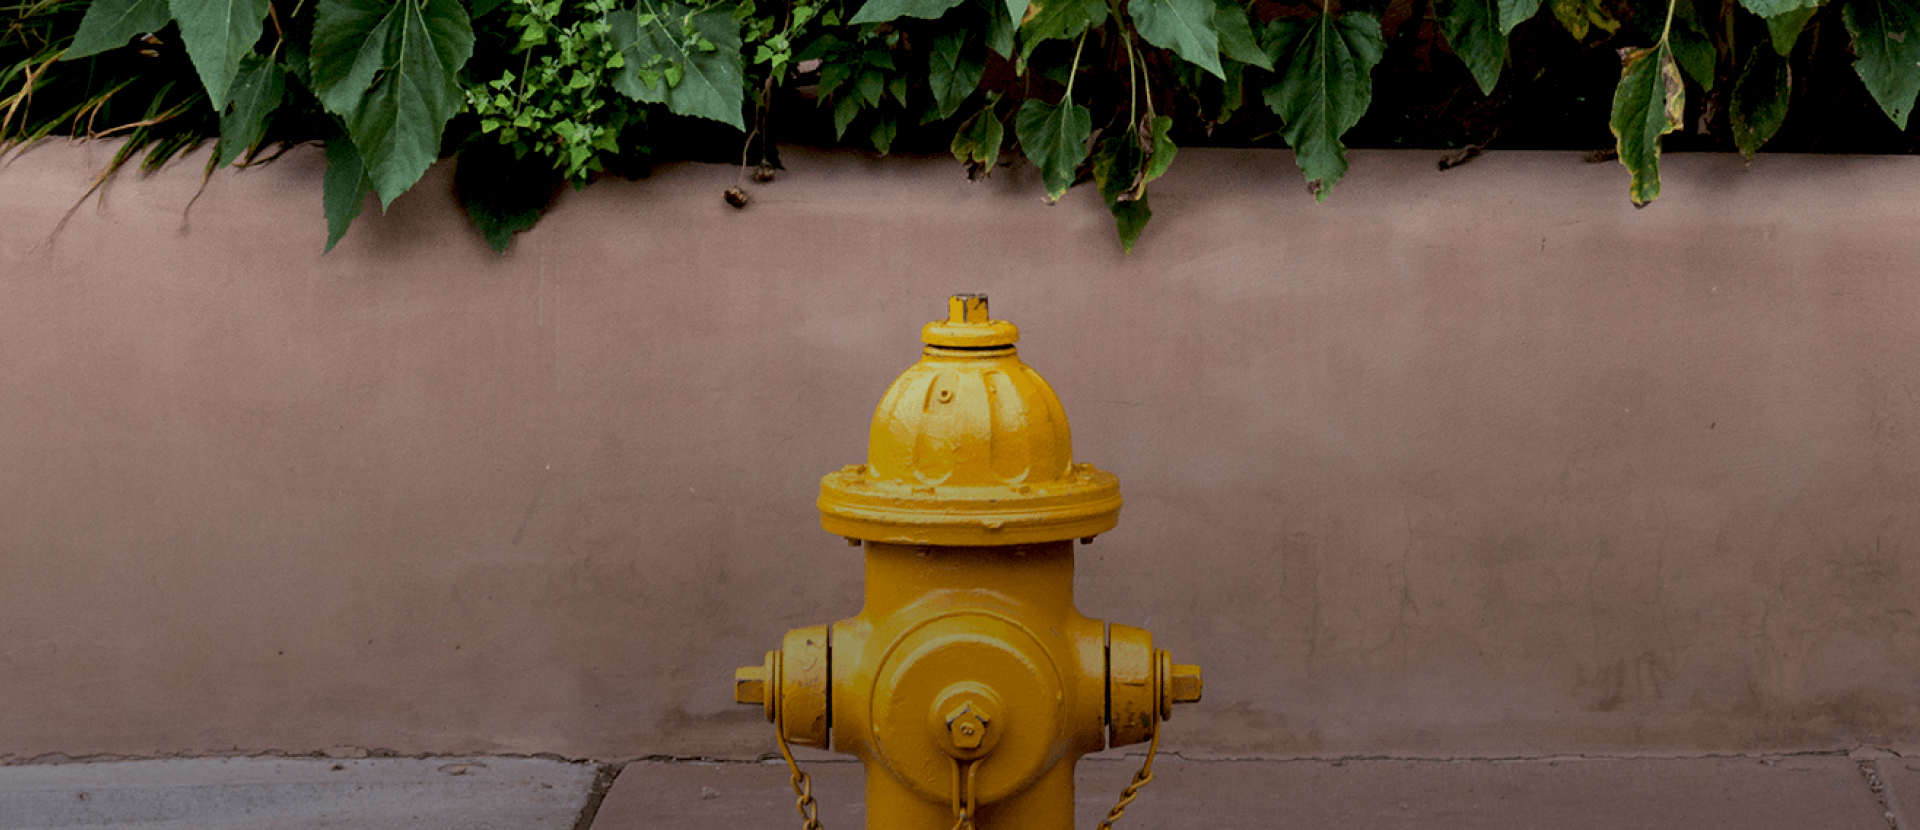 Uso eficiente del hidrante